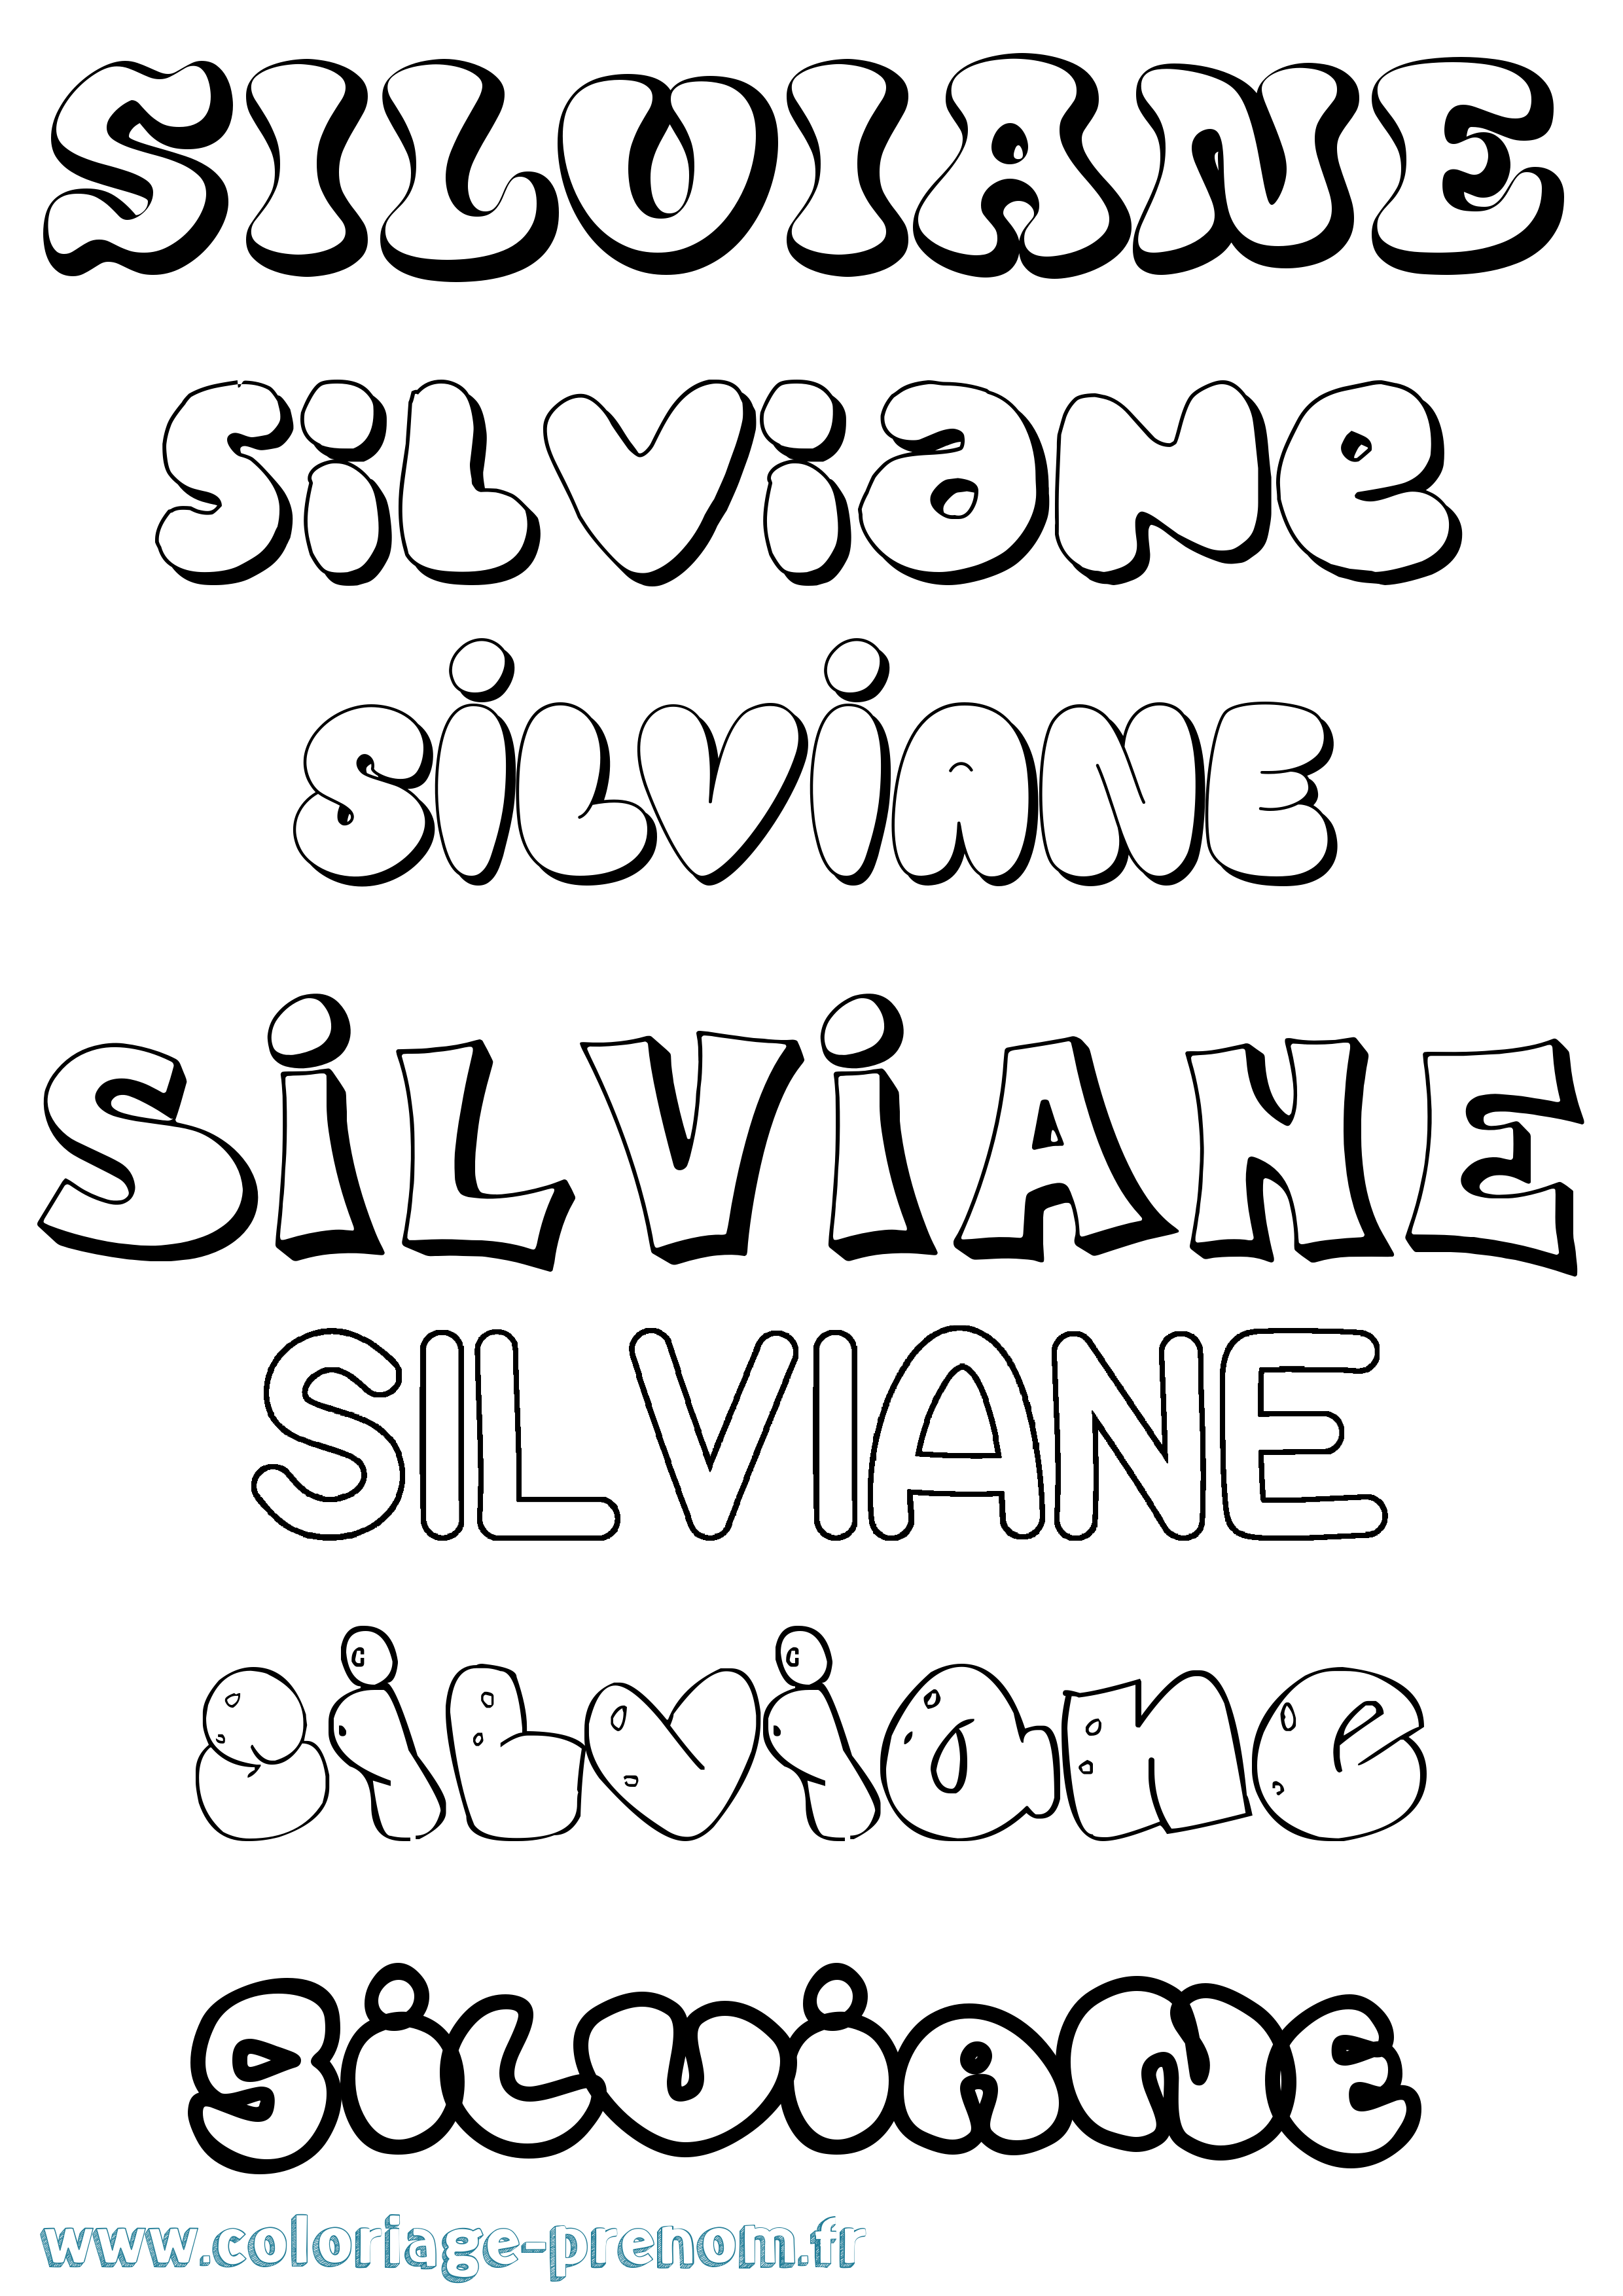 Coloriage prénom Silviane Bubble